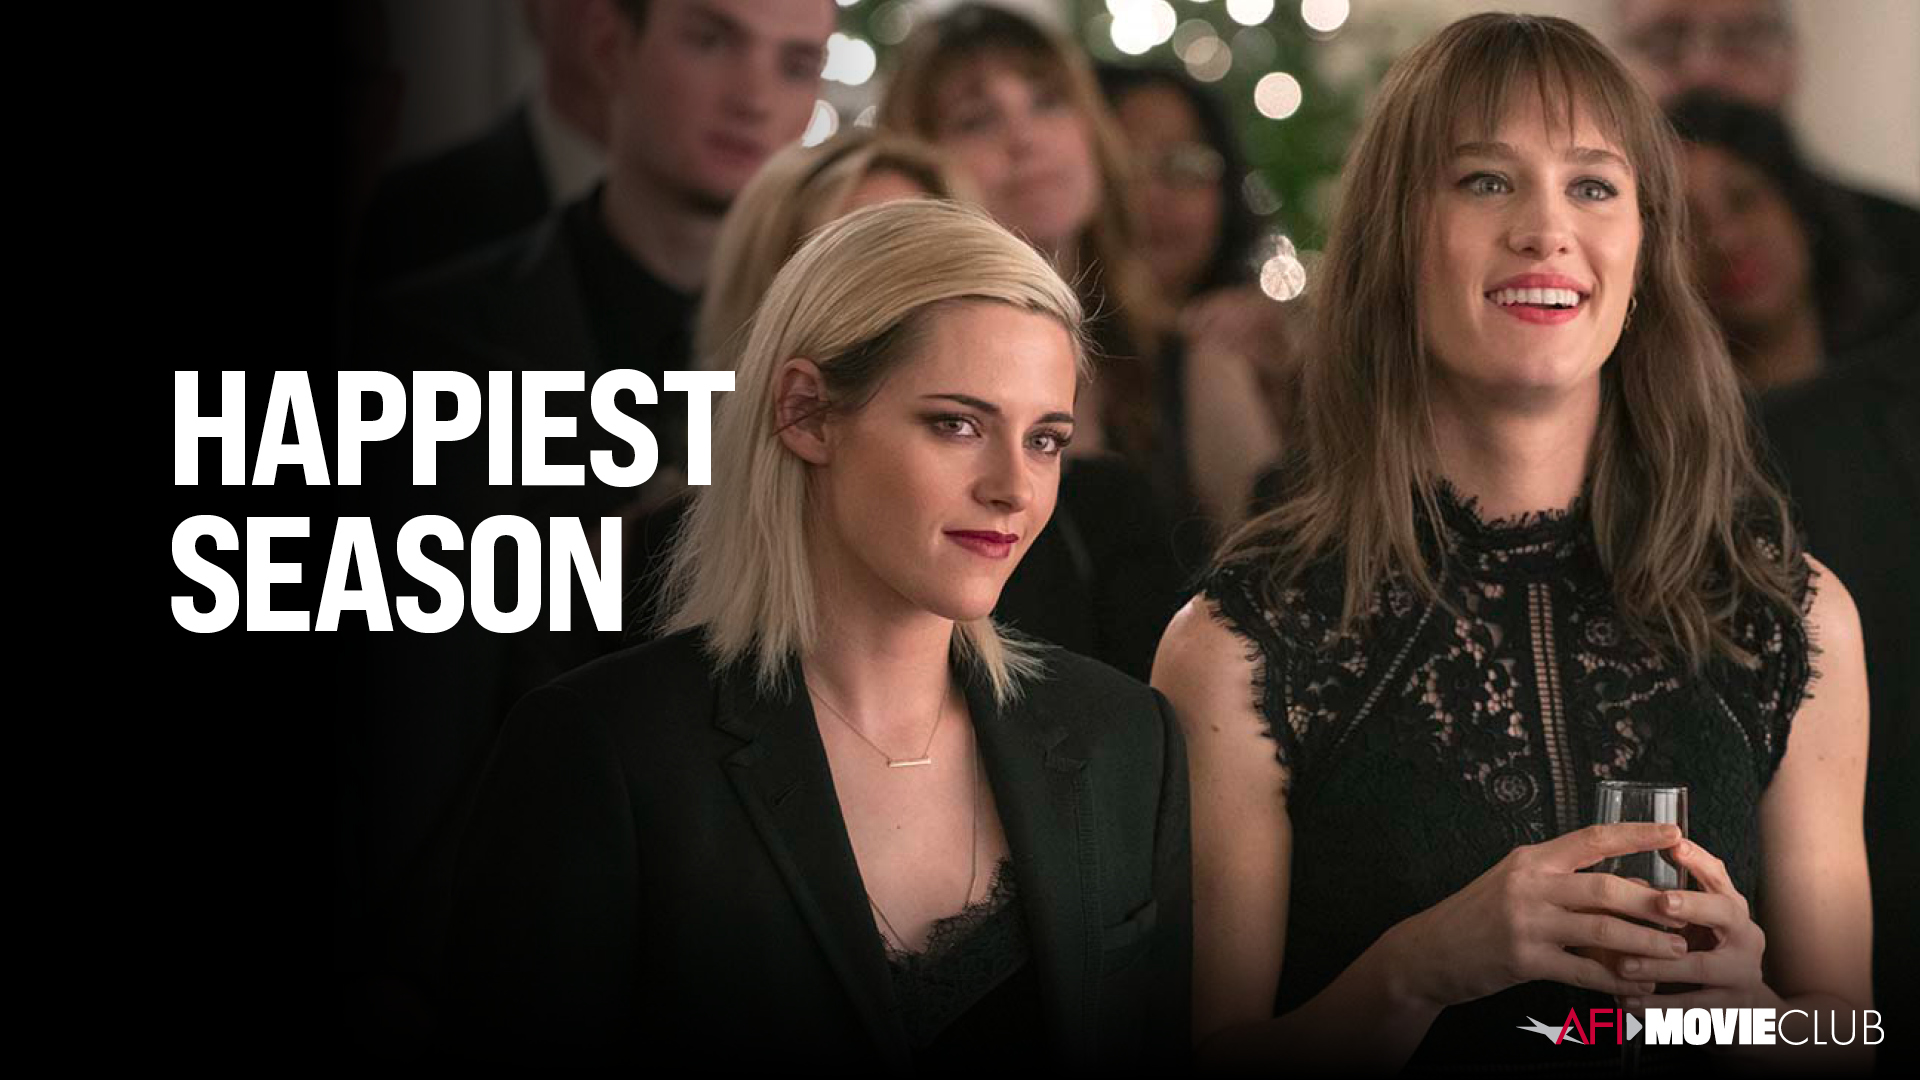 Happiest Season Film Still - Kristen Stewart and Mackenzie Davis